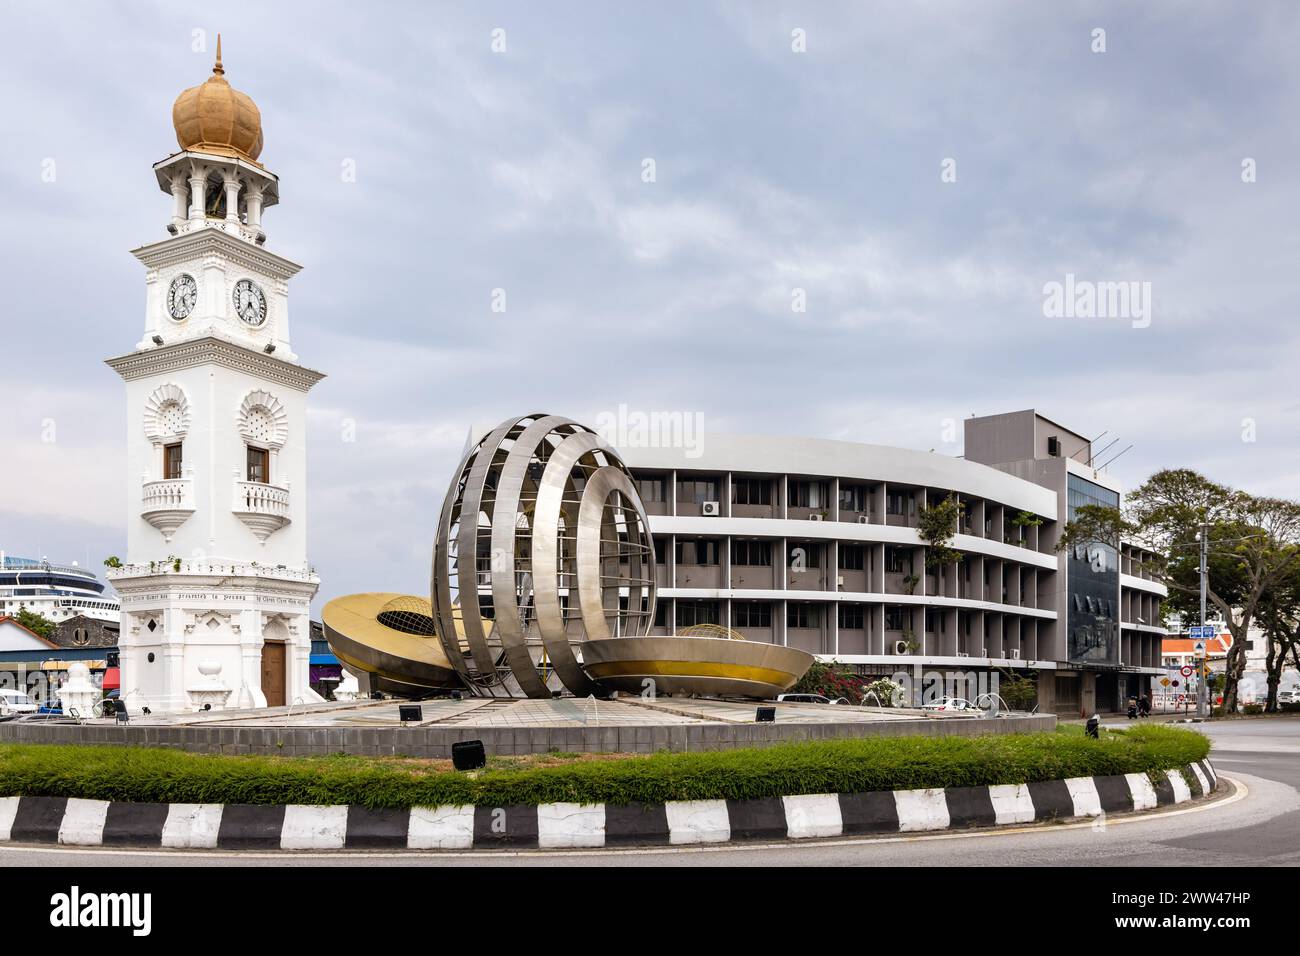 La Torre dell'orologio del Queen Victoria Memorial, un monumento storico che commemora il Giubileo di Diamante della Regina Vittoria, Georgetown, Penang, Malesia Foto Stock